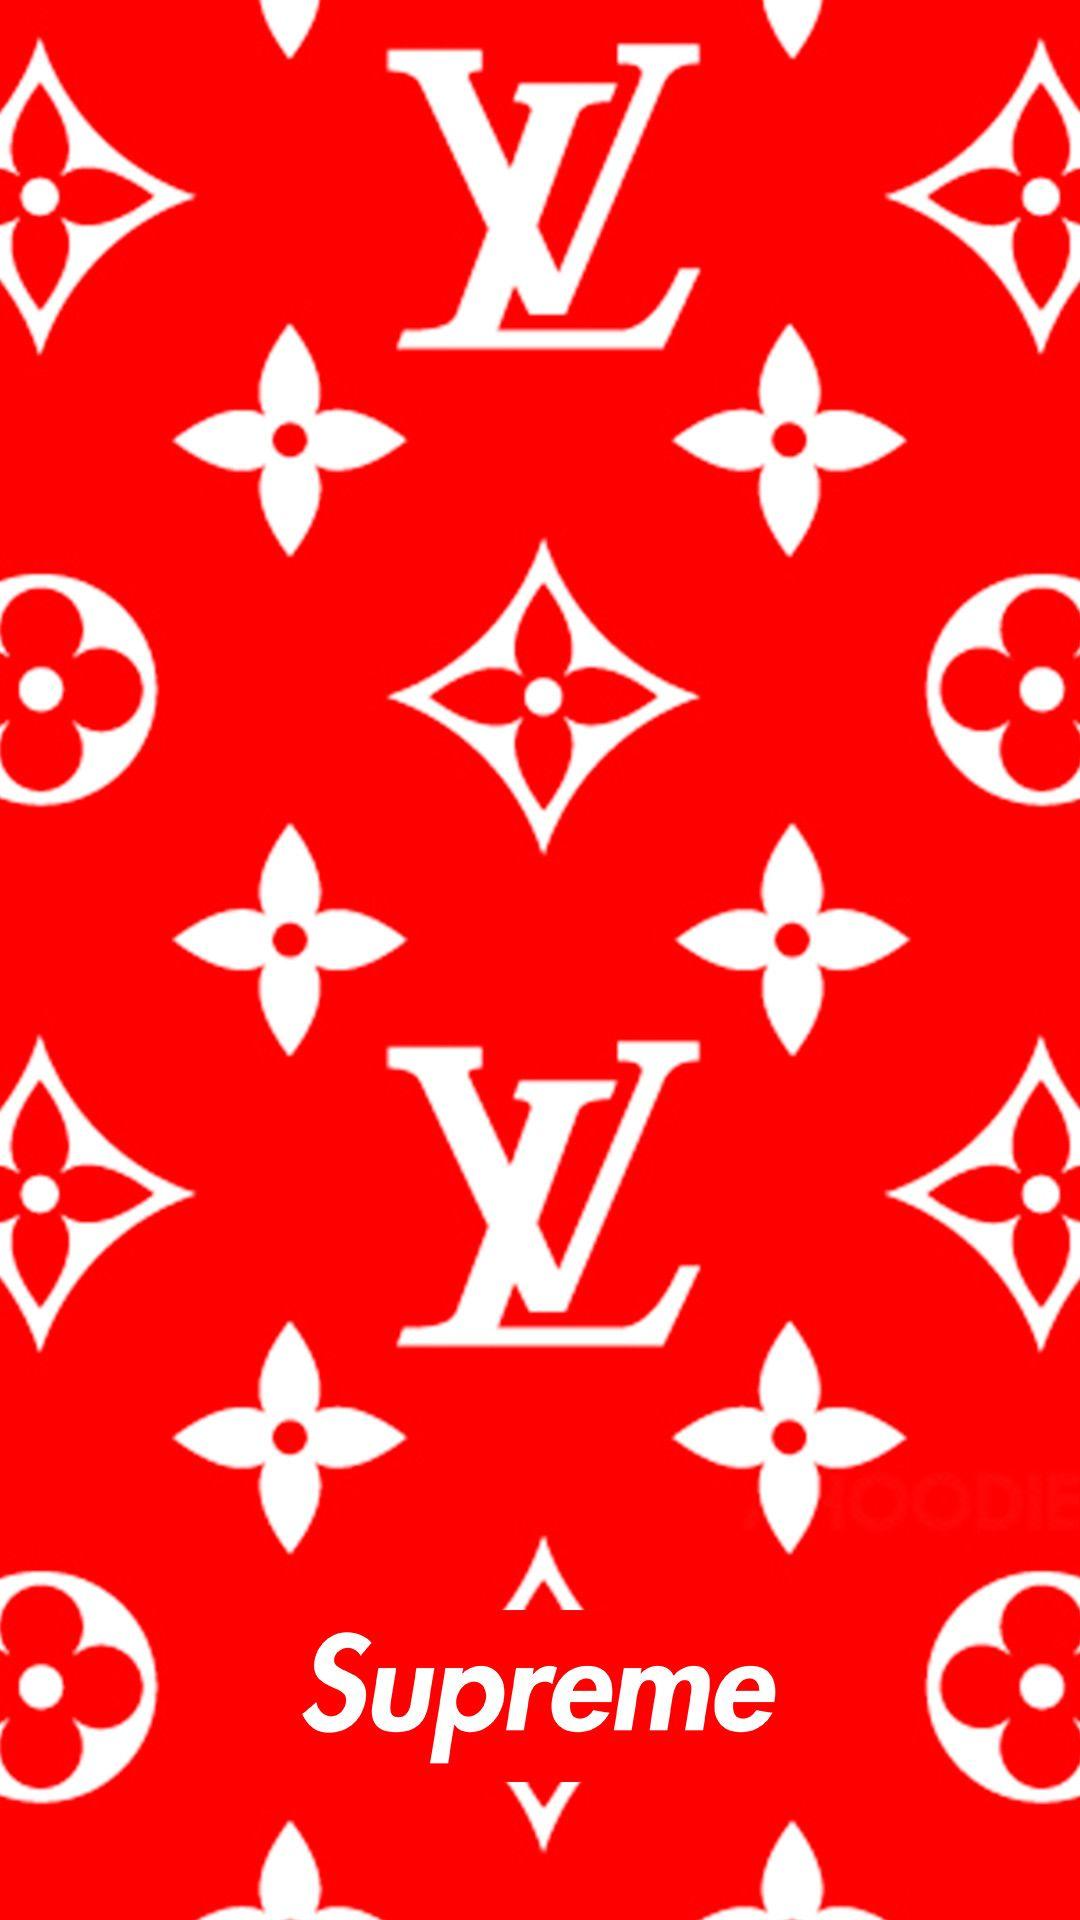 Supreme X Louis Vuitton Logo - 1080x1920 Download Supreme x louis vuitton 1080 x 1920 Wallpapers ...